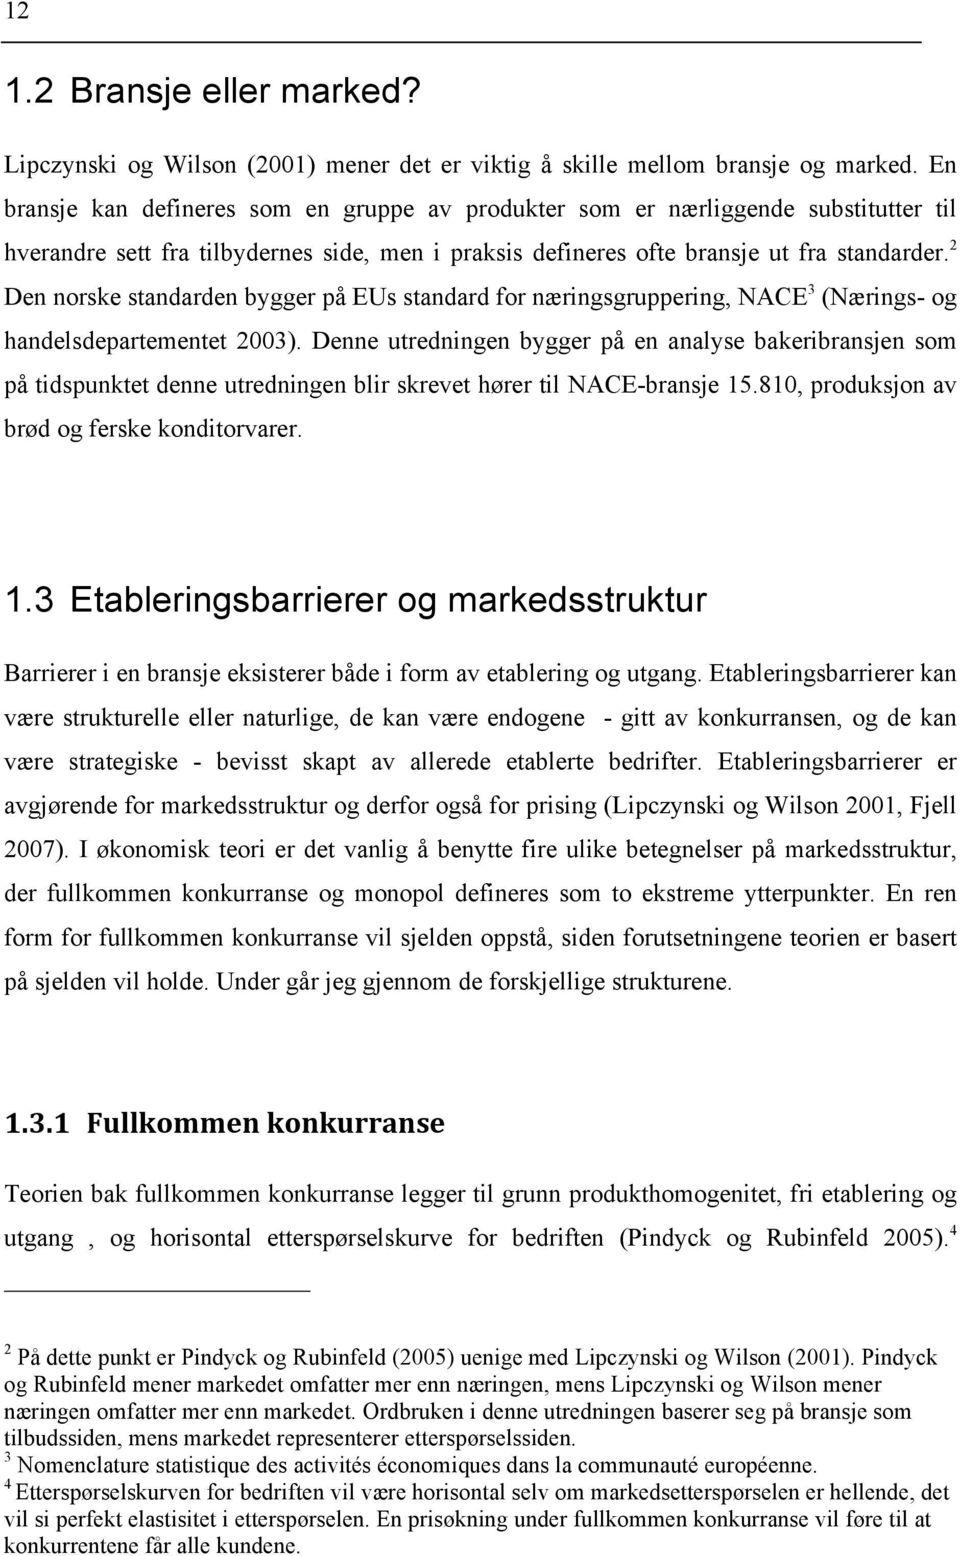 2 Den norske standarden bygger på EUs standard for næringsgruppering, NACE 3 (Nærings- og handelsdepartementet 2003).